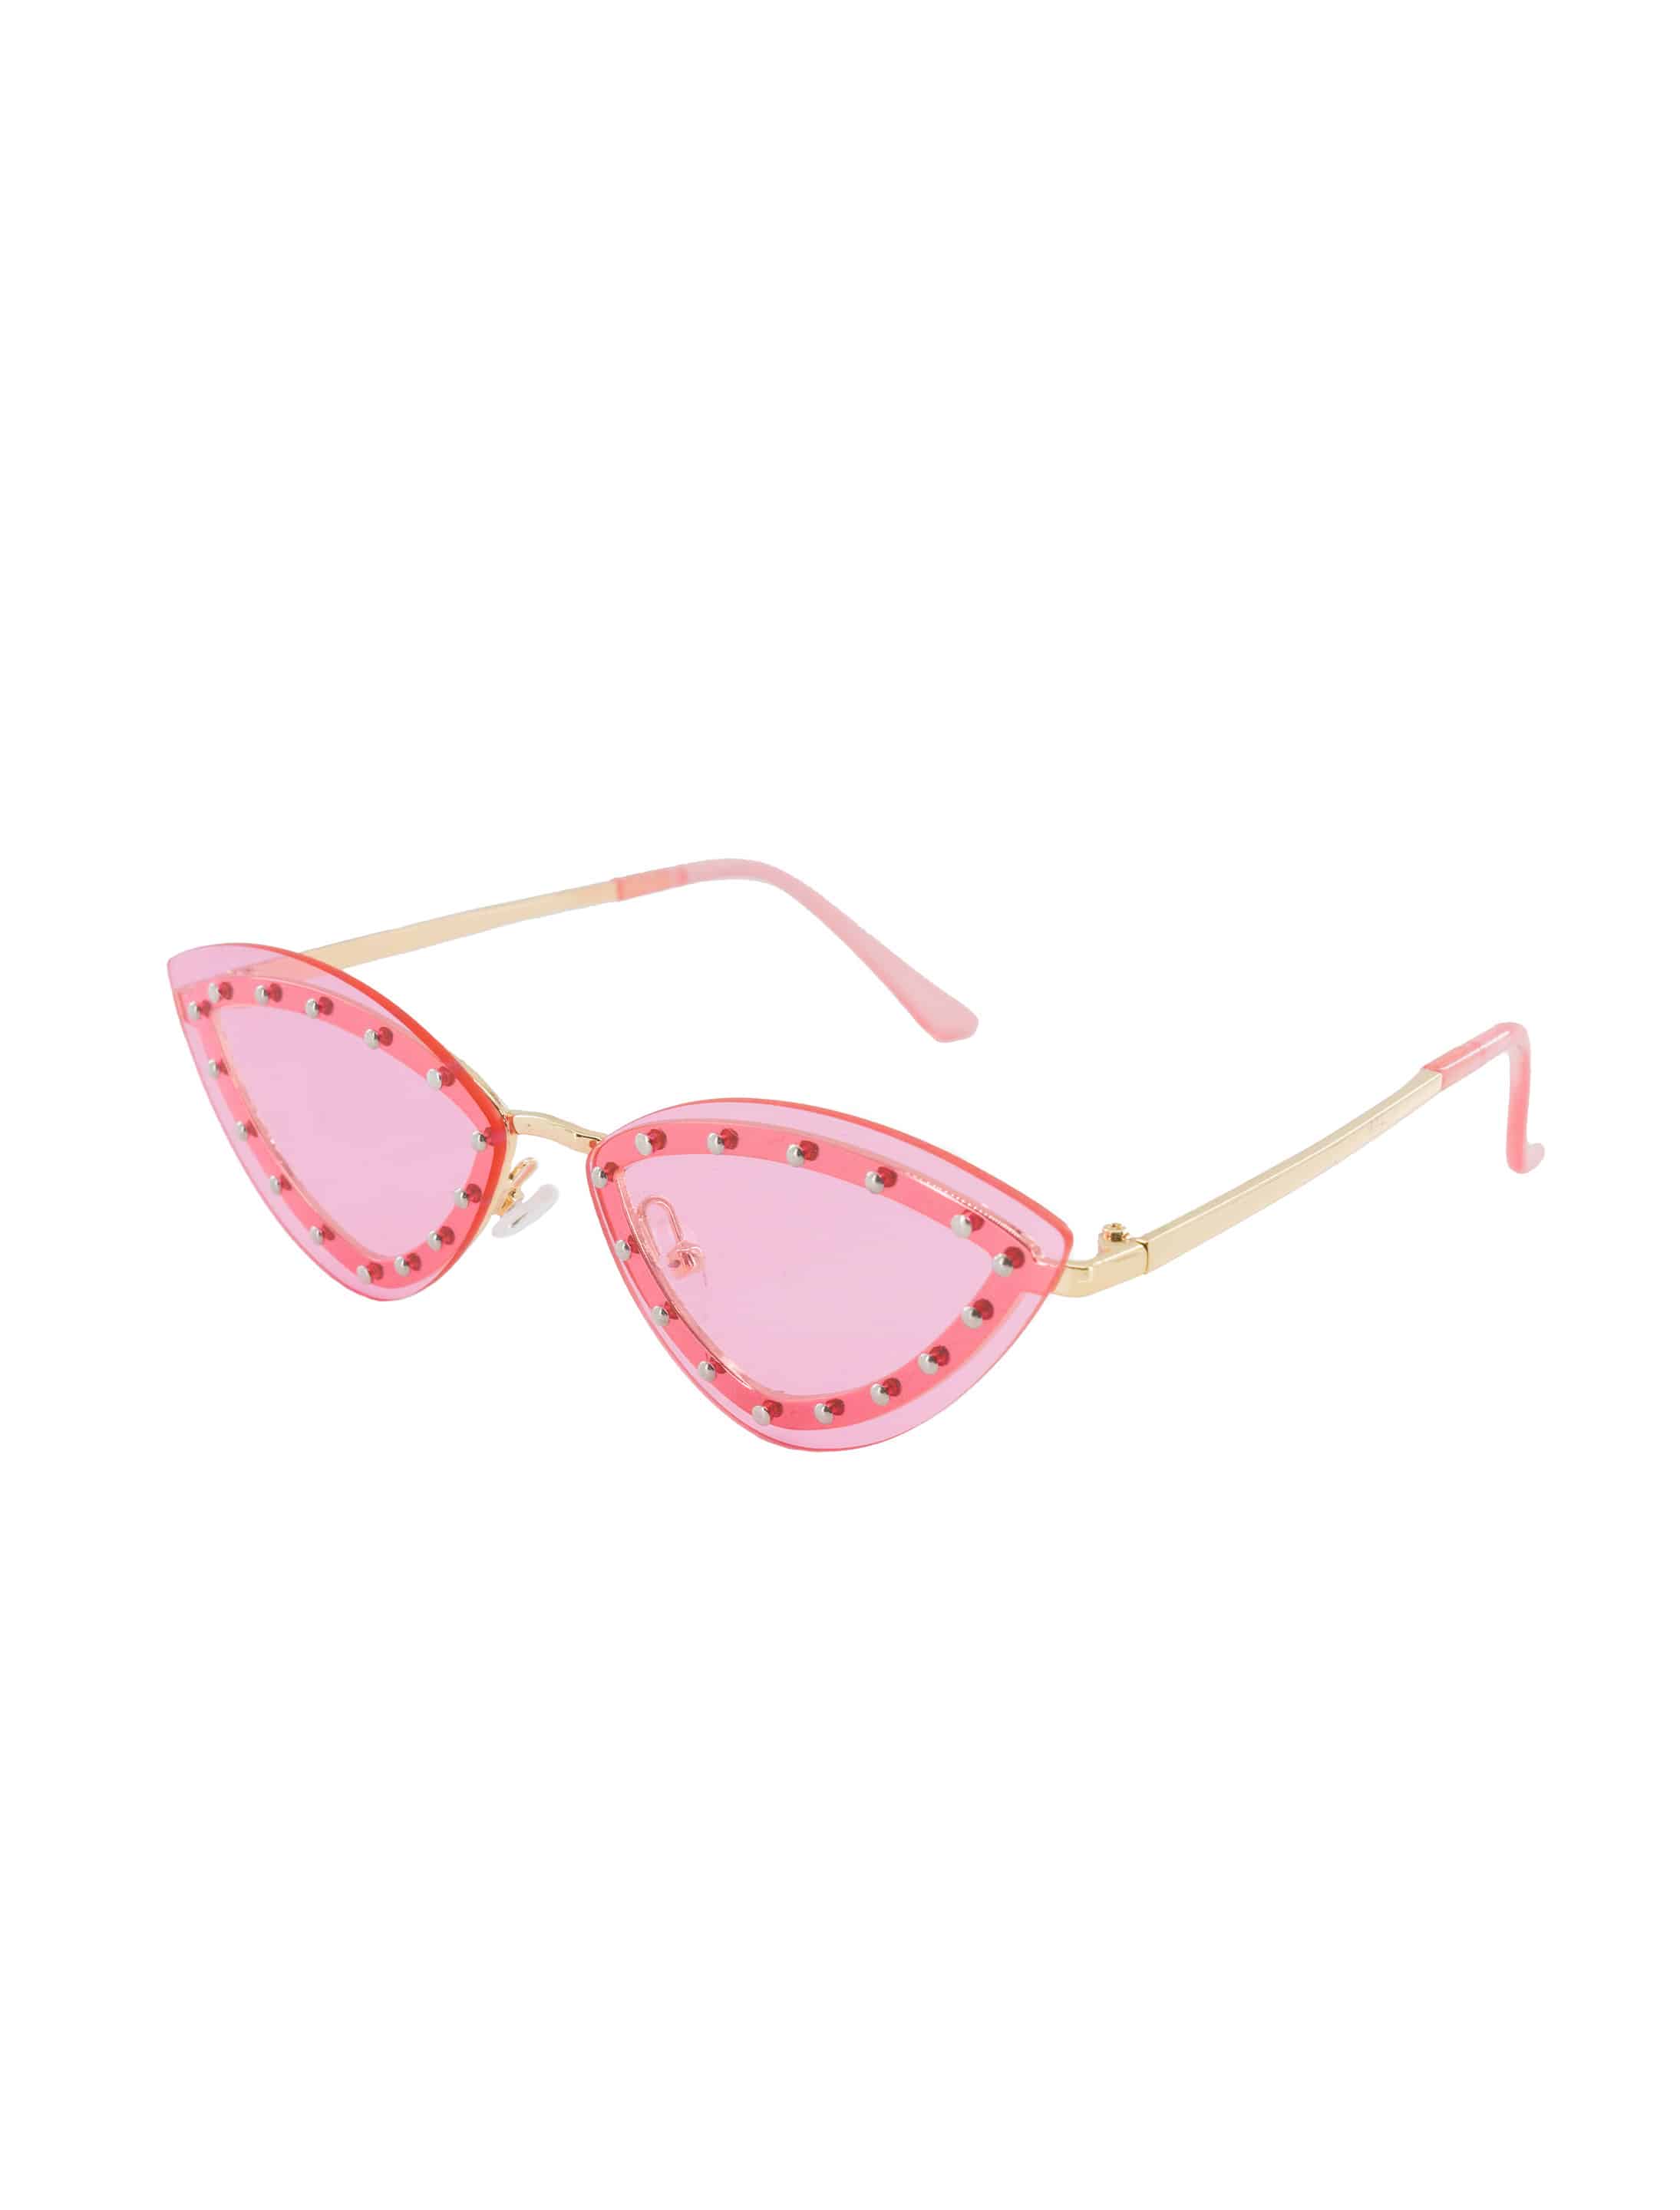 Brille Katzenaugen pink